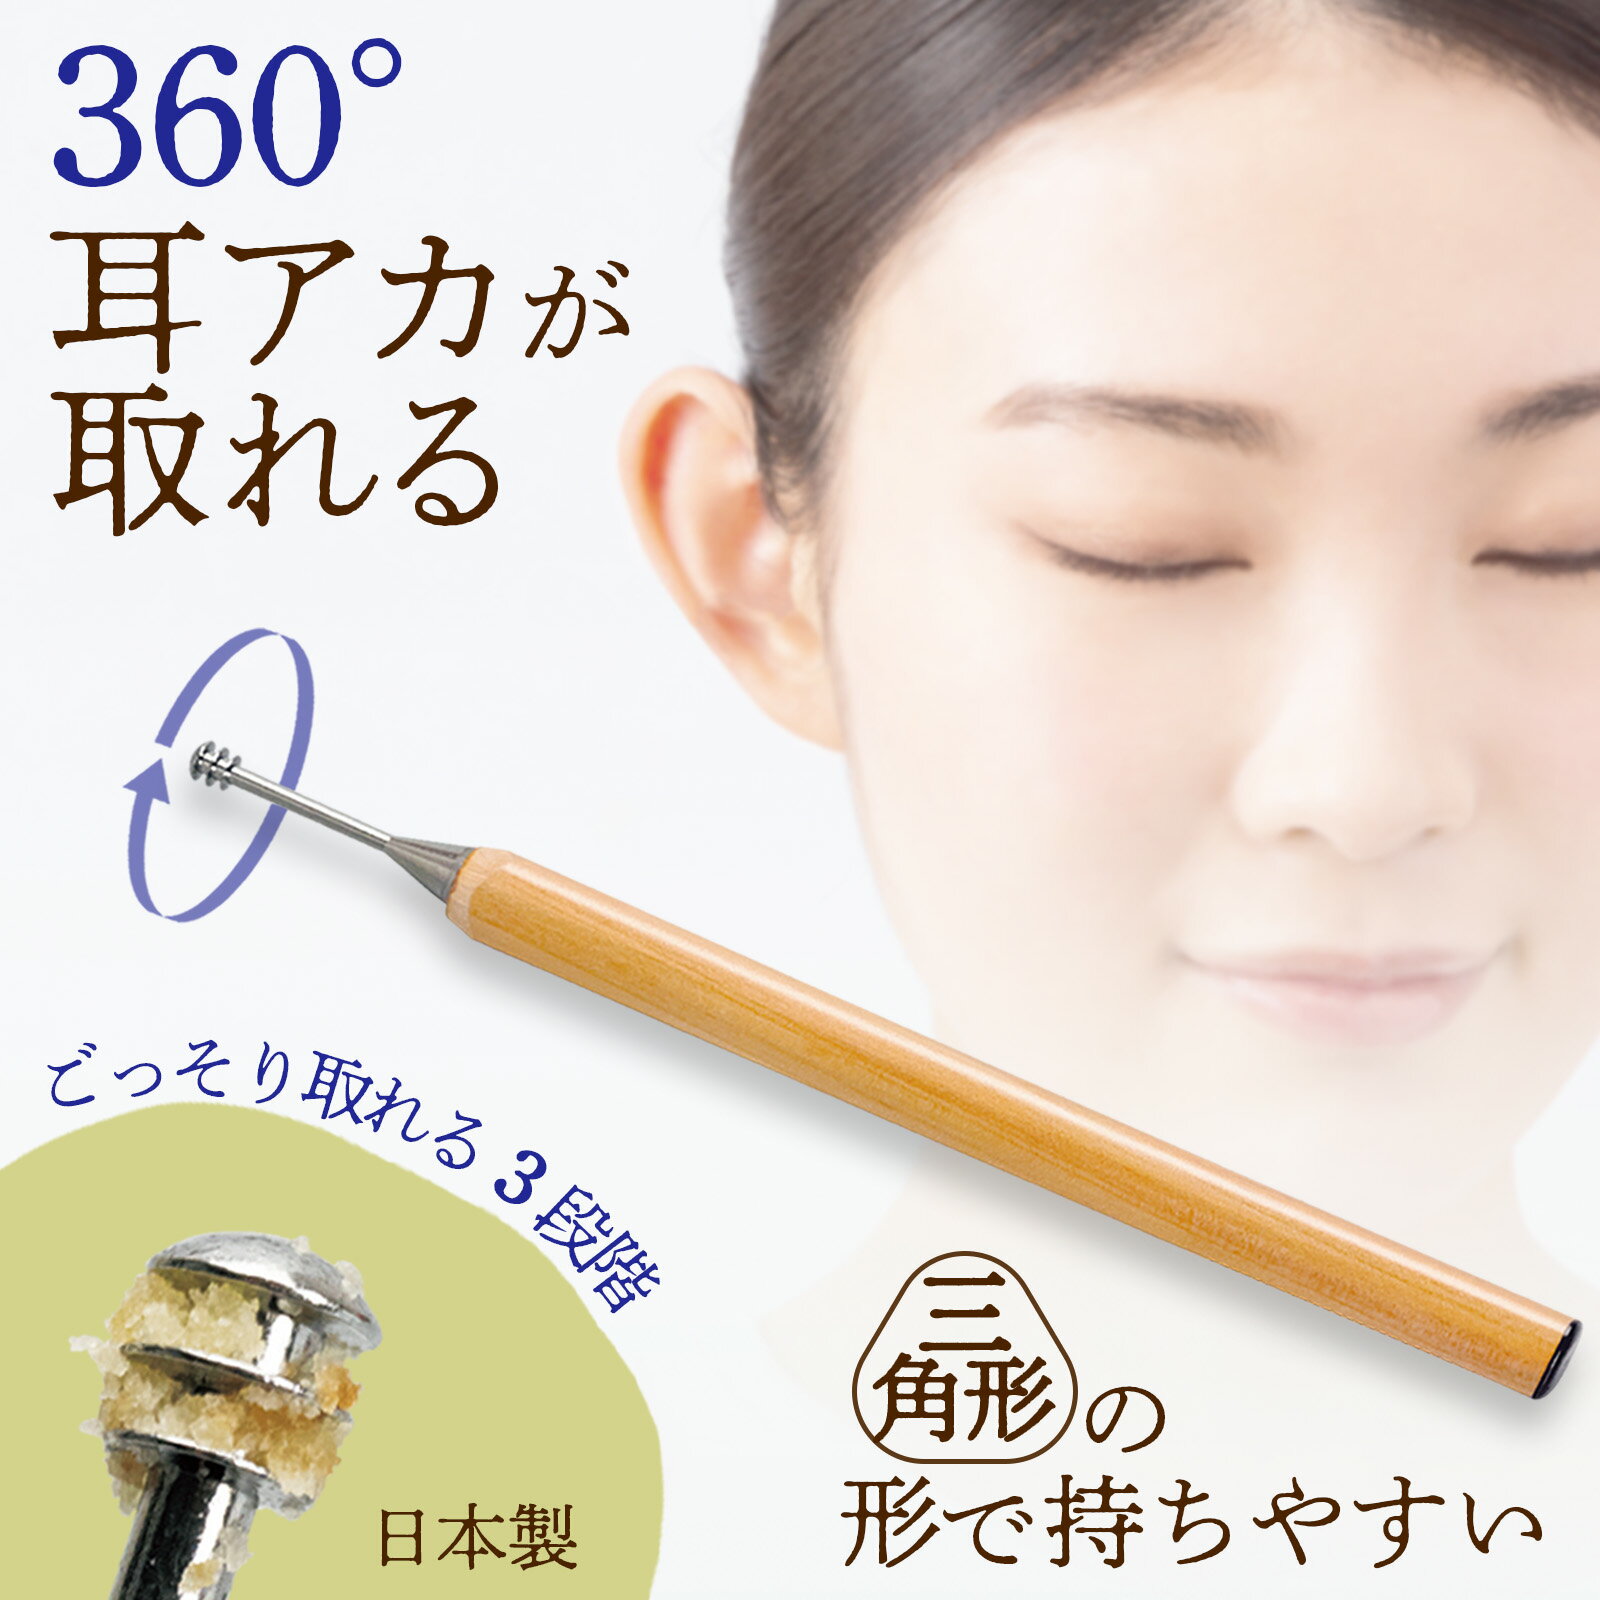 【送料無料】三角鉛筆の 3段 耳かき 耳掻き スクリュー 天然木 日本製